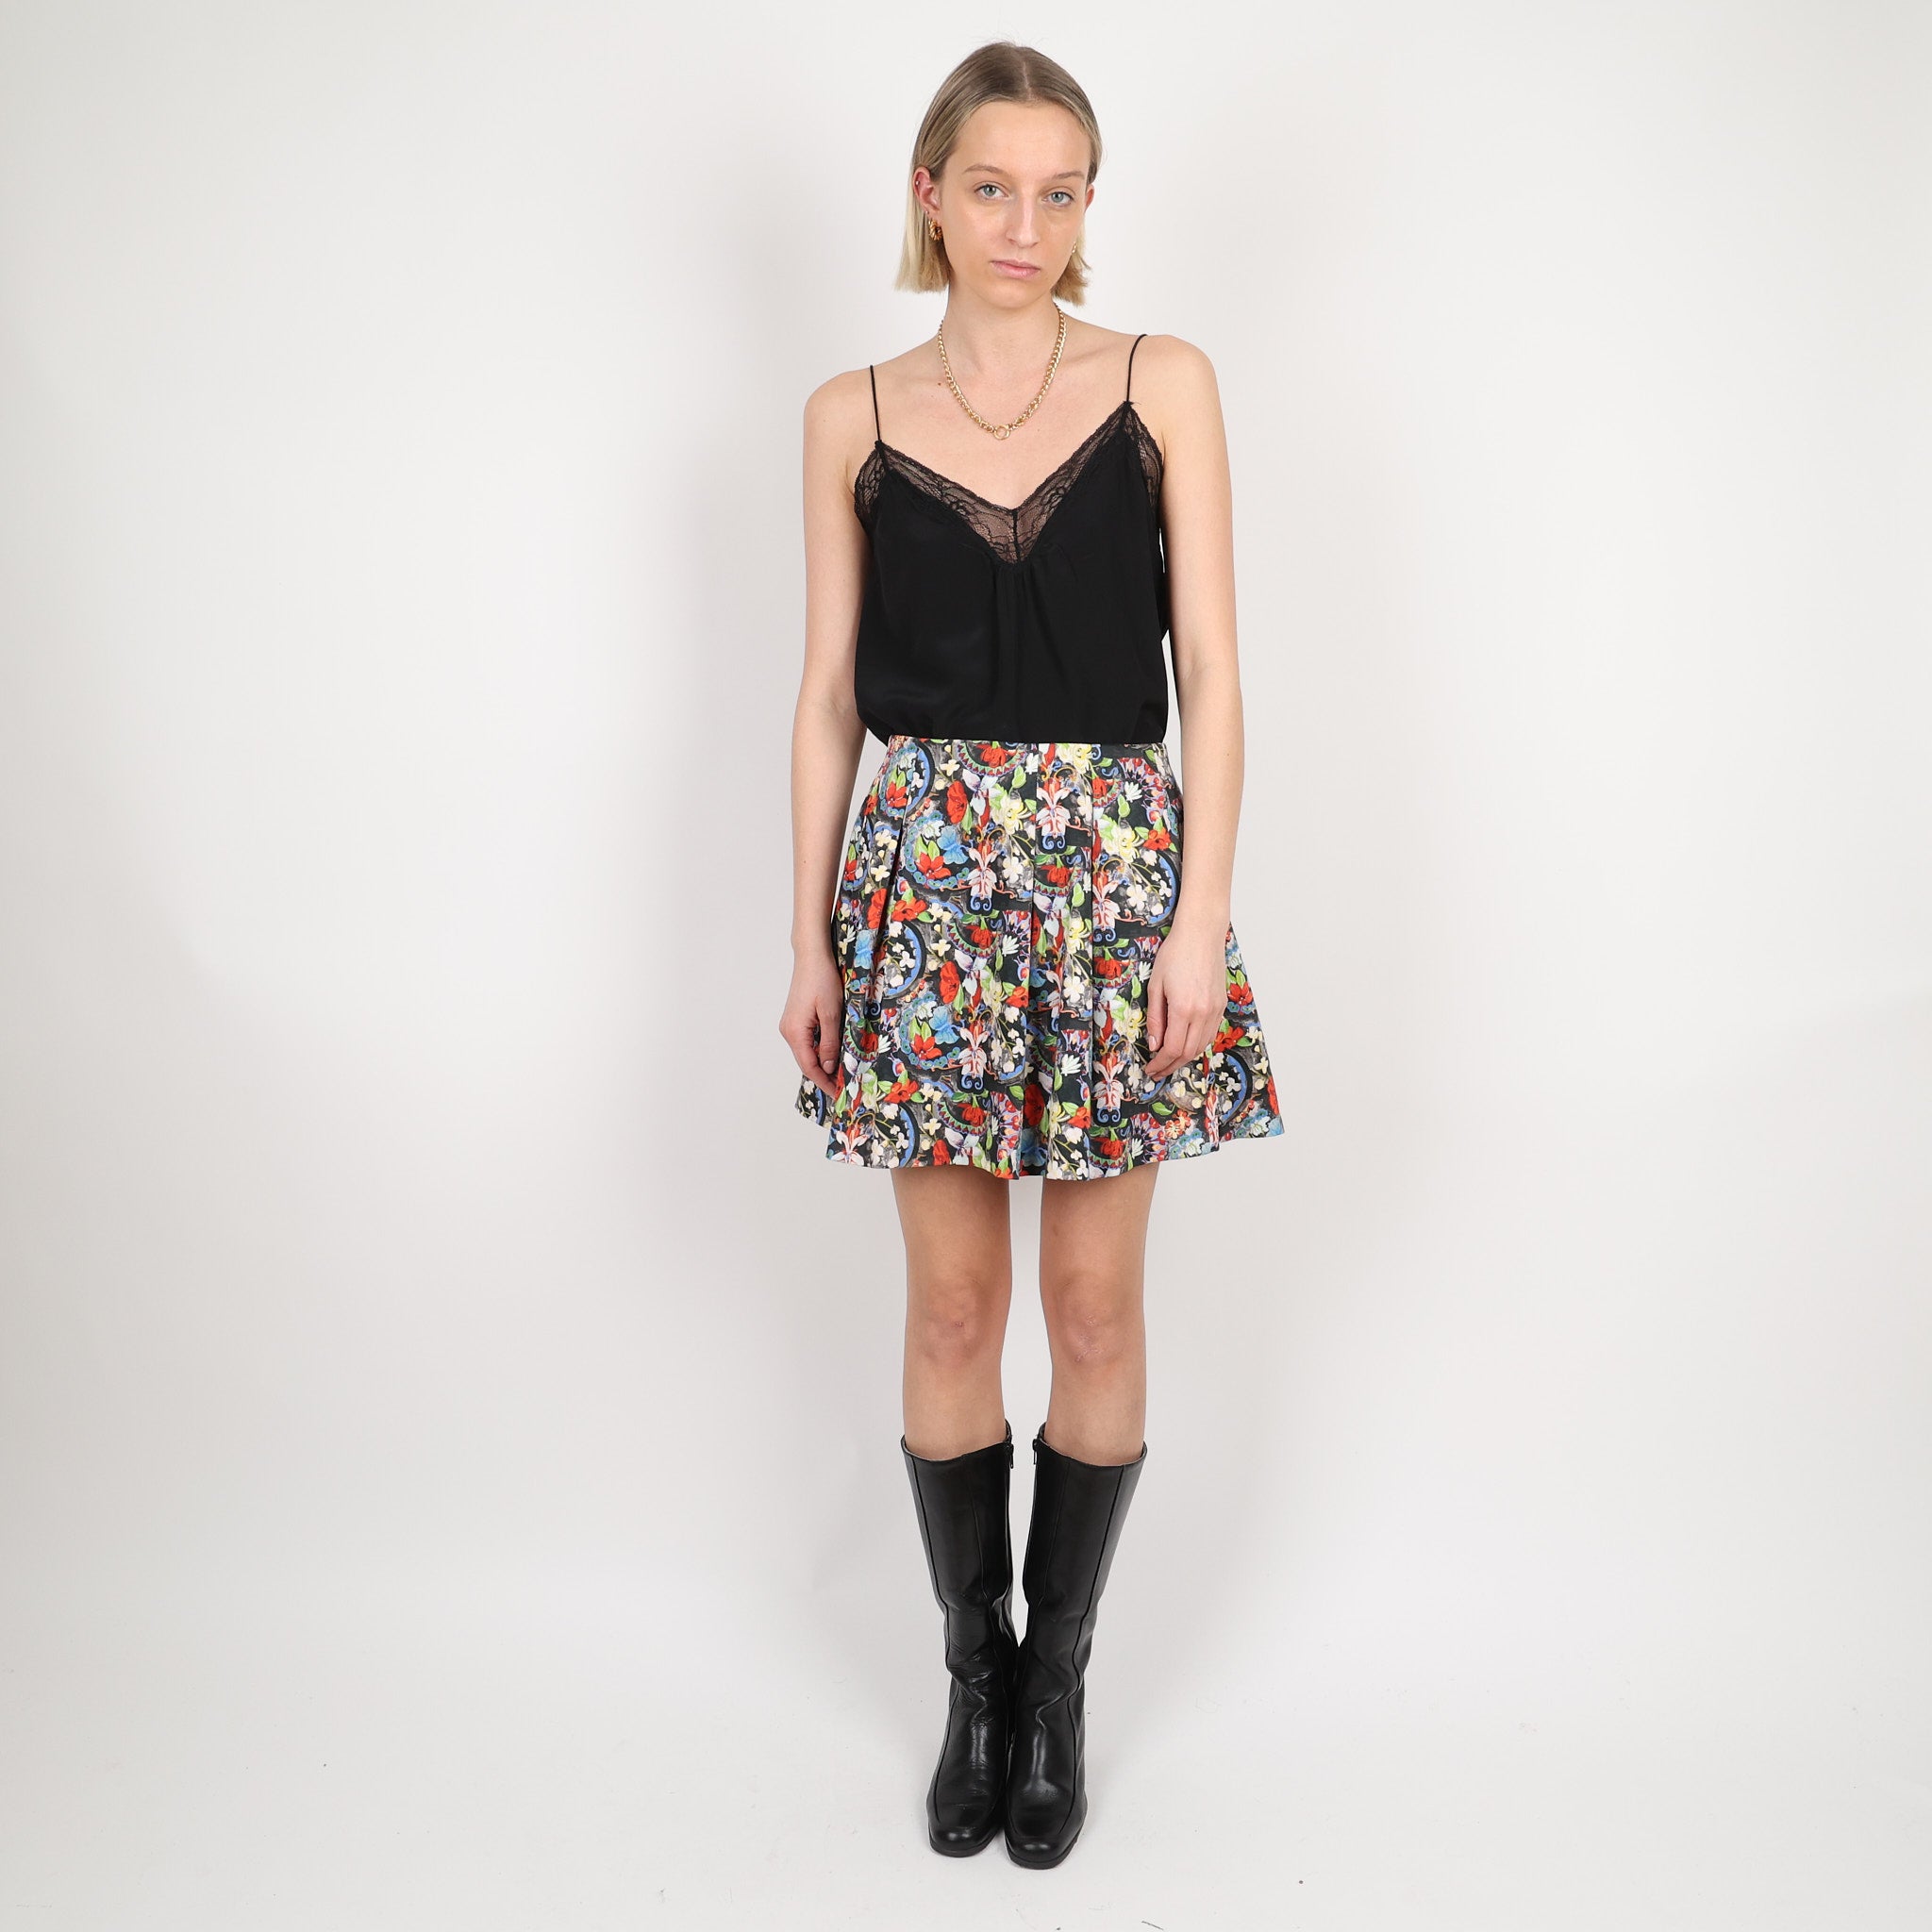 Skirt, UK Size 6